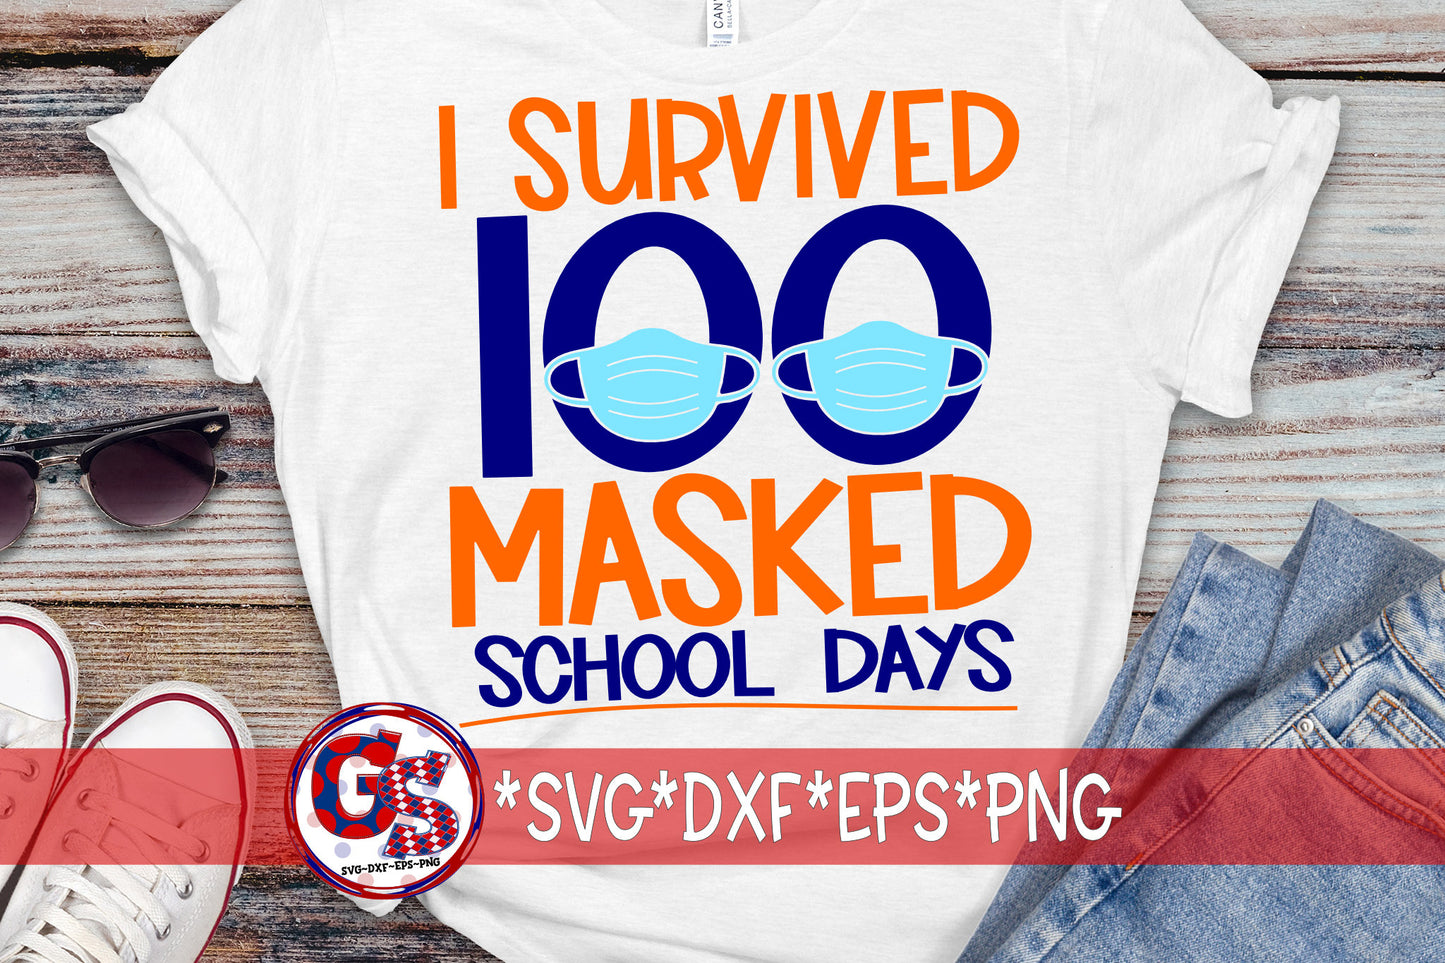 I Survived 100 Masked School Days svg dxf eps png. 100 Masked Days Of School SvG | 100 Days SvG | School SvG | Instant Download Cut Files